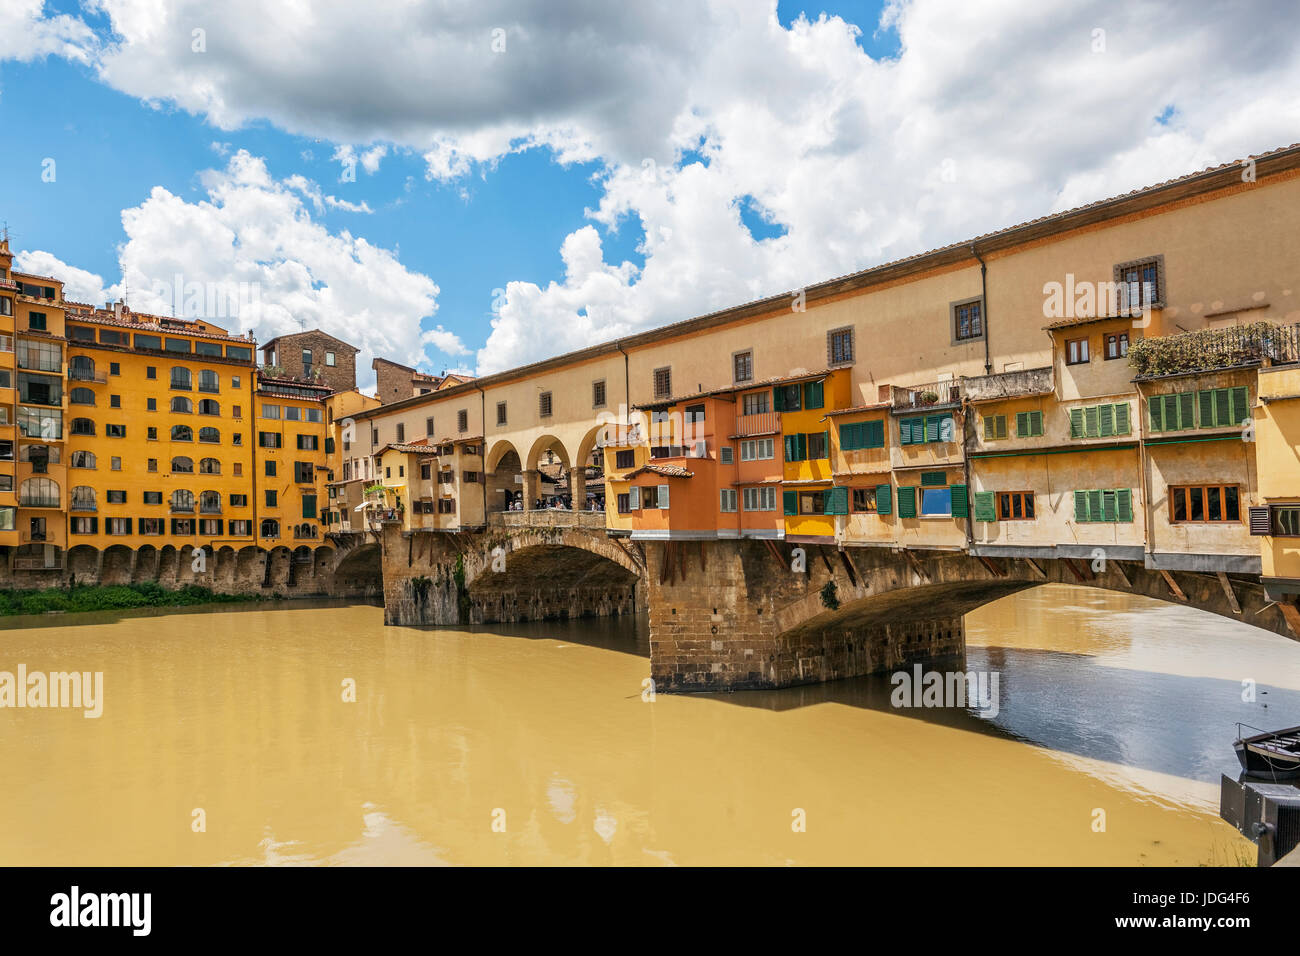 Der Fluss Arno und Ponte Vecchio Brücke in Firenze (Florenz), Italien Stockfoto